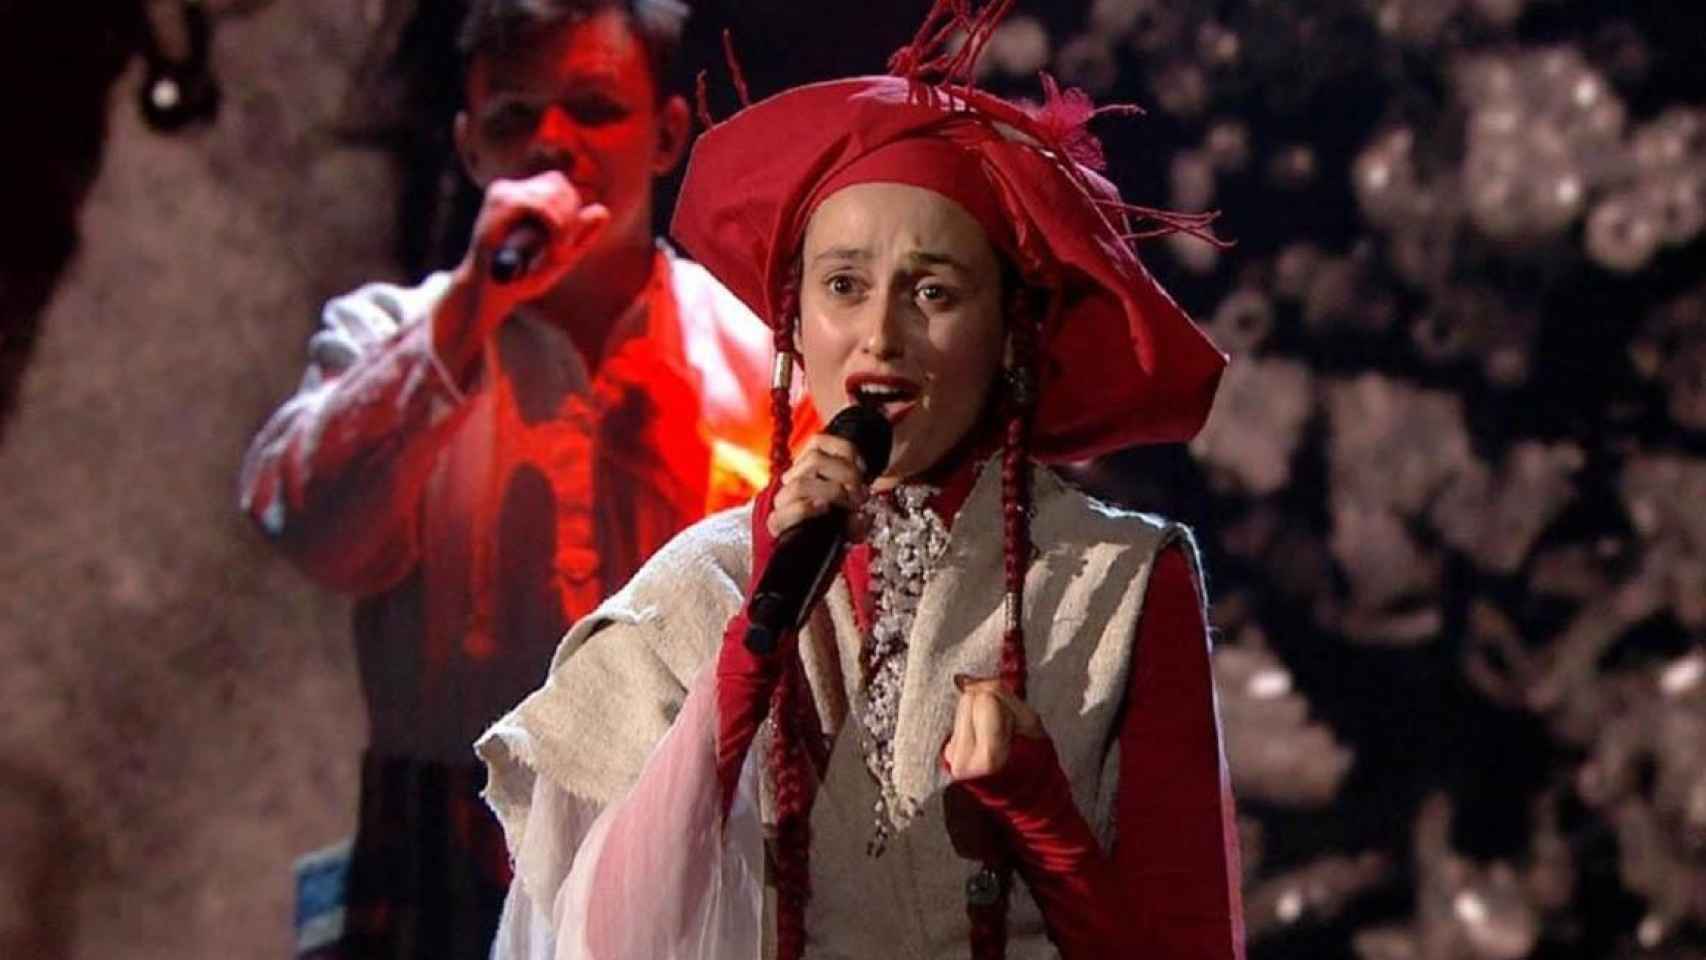 Alina Pash ha renunciado a representar a Ucrania en Eurovisión tras ser señalada por visitar Crimea.